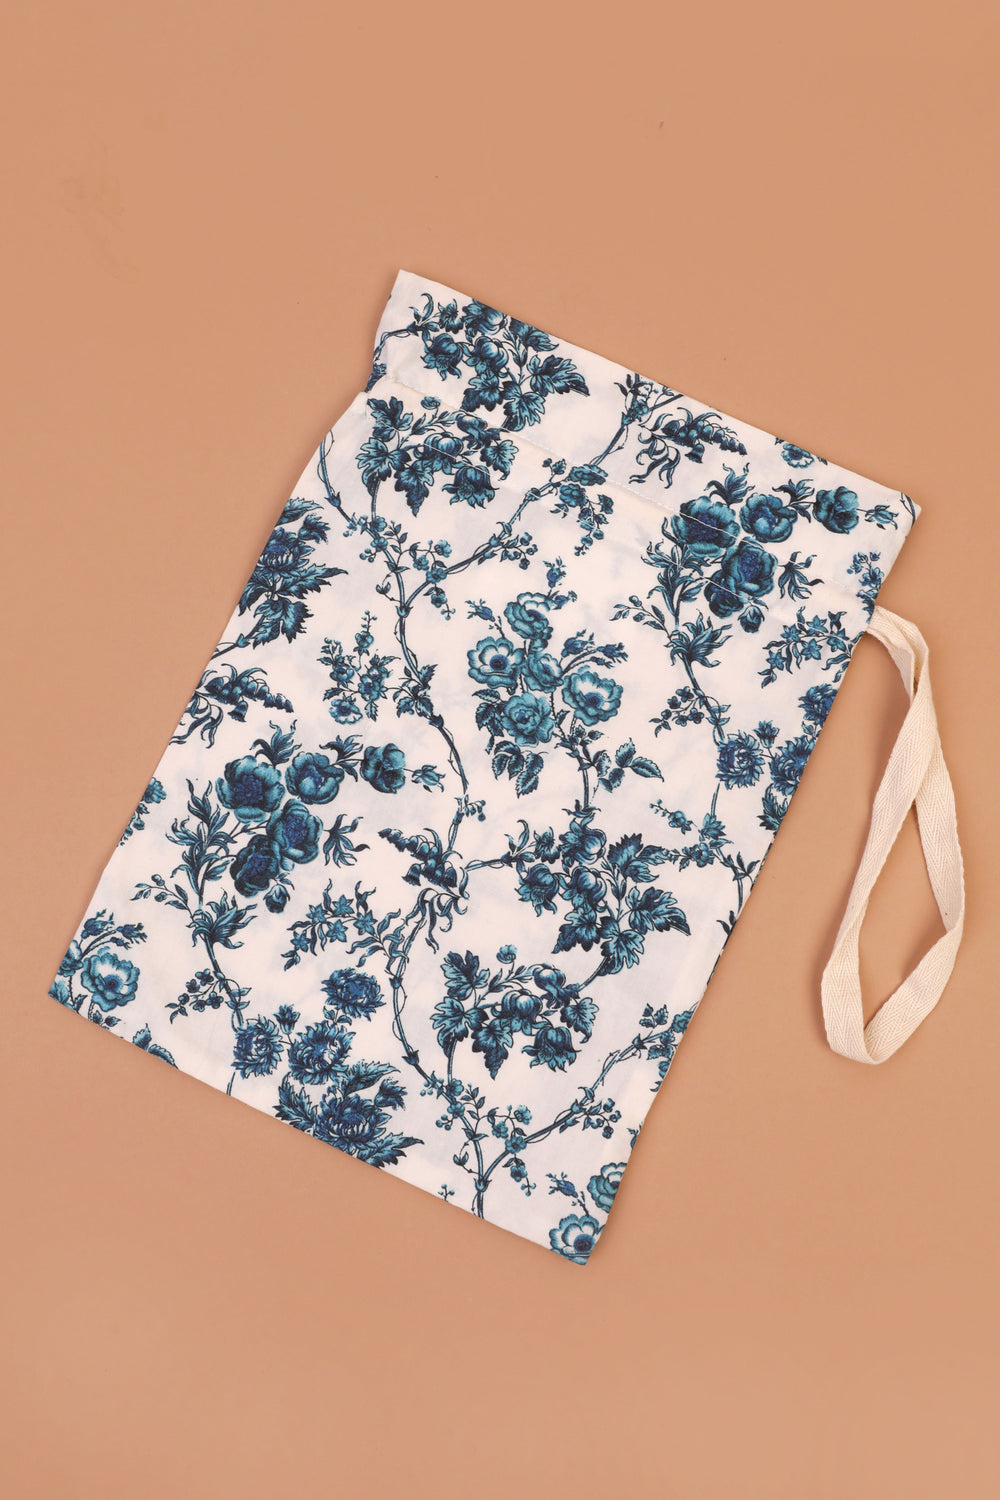 Large Drawstring Bag Blue Floral